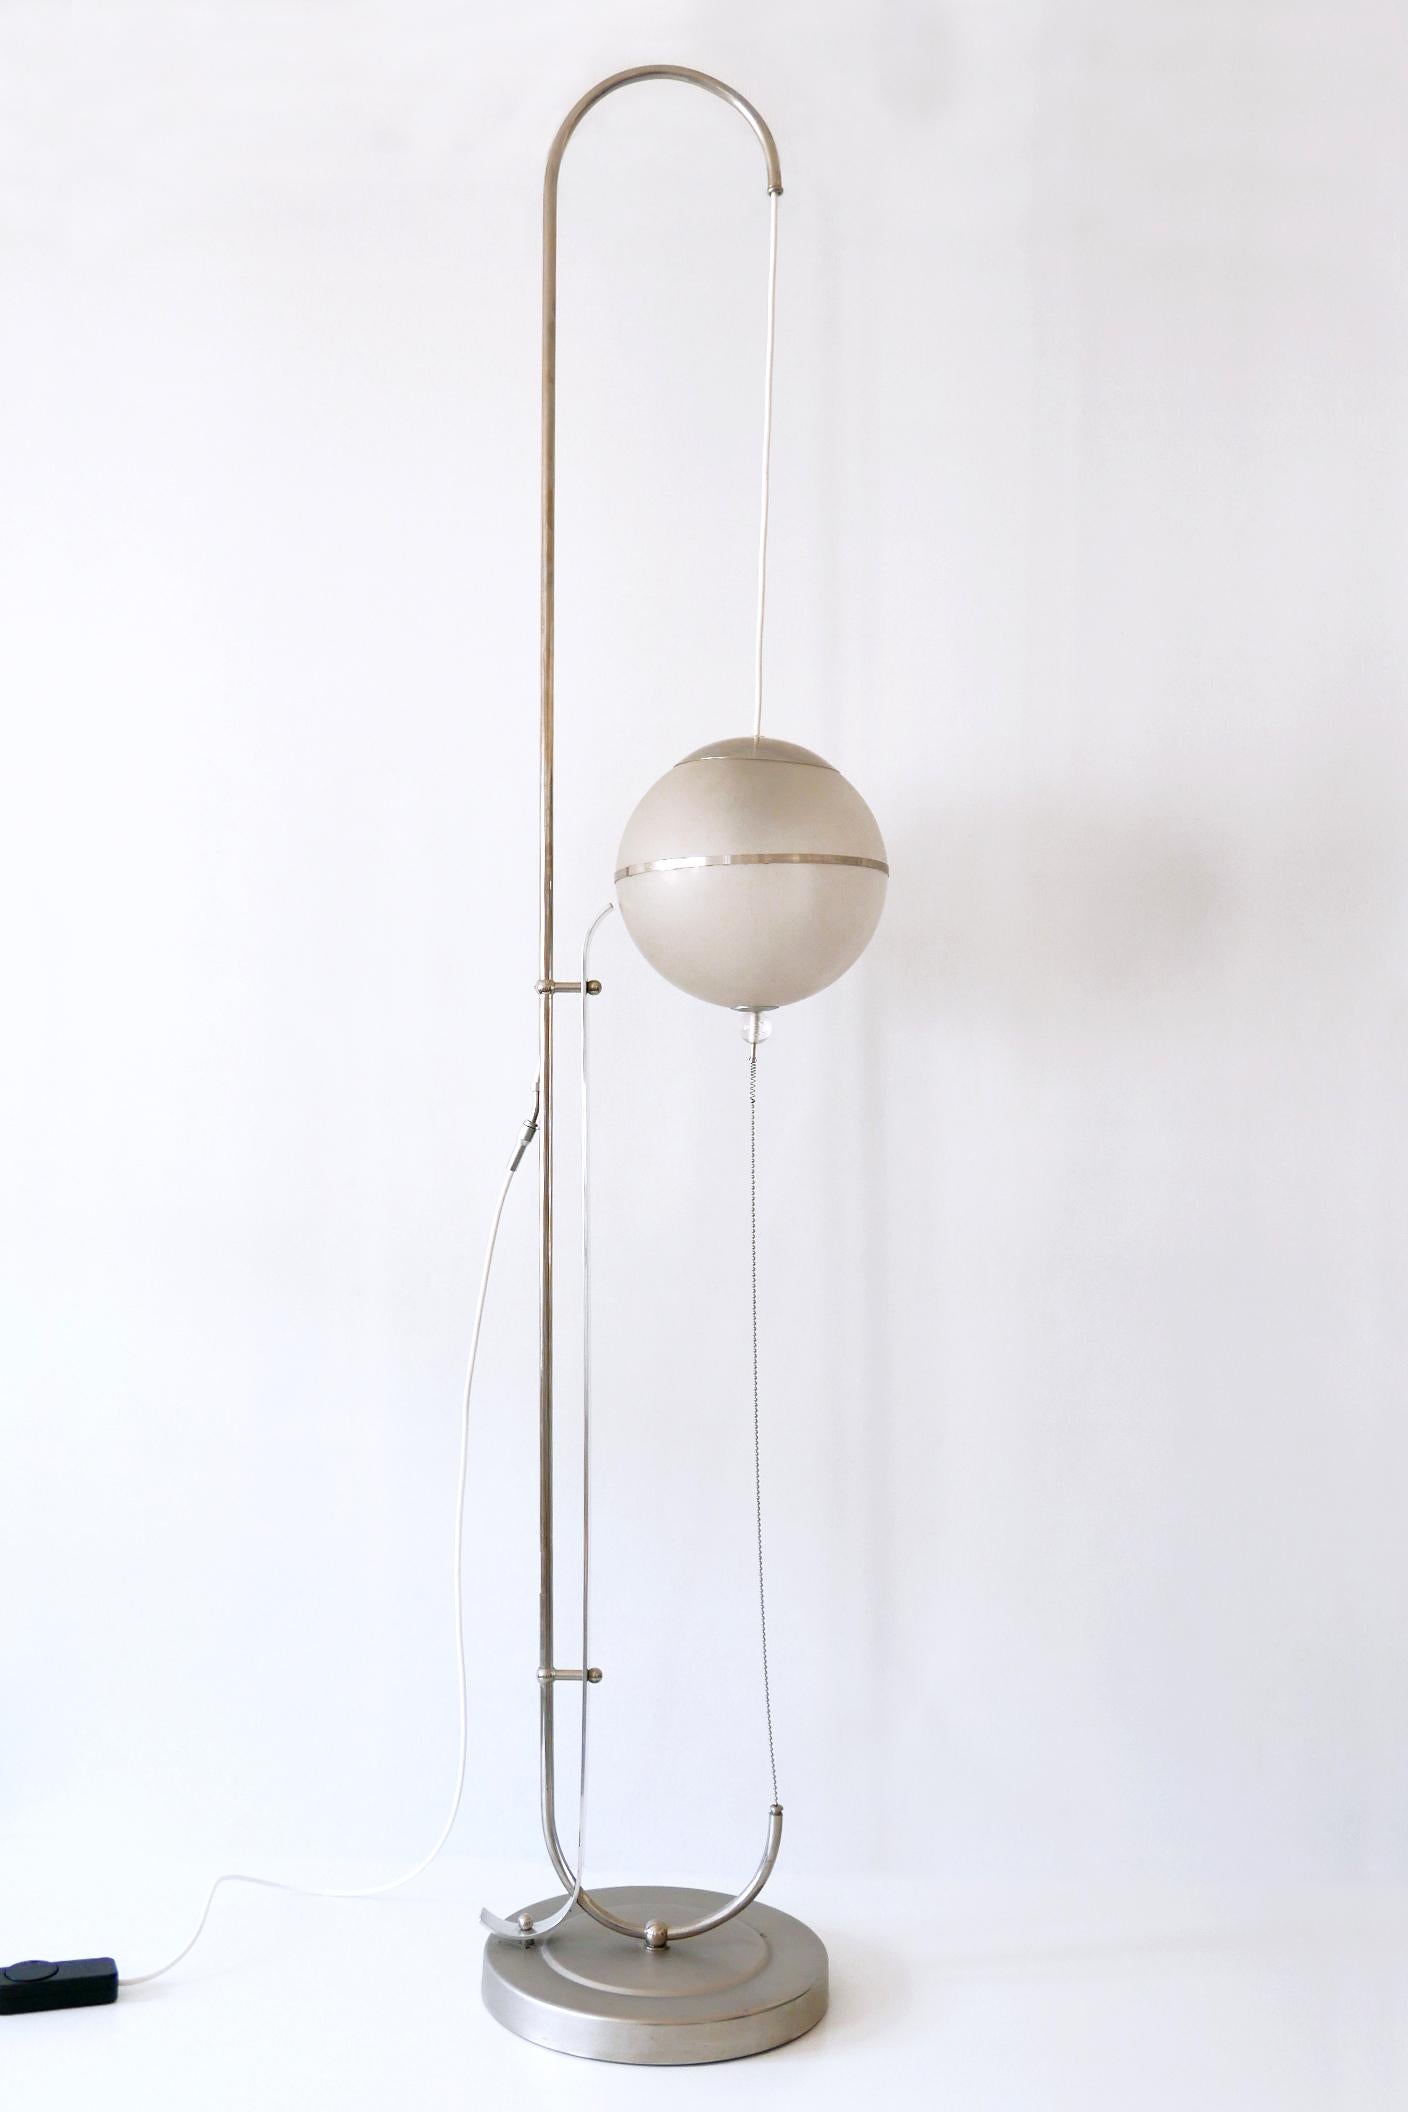 Exceptionnel lampadaire Bauhaus / Art Déco. Conçu par Karl Trabert (attribué), 1928. Fabriqué par Schanzenbach & Co., Francfort-sur-le-Main, Allemagne, années 1930. Cette lampe n'a pas l'abat-jour original en papier spécial dit 